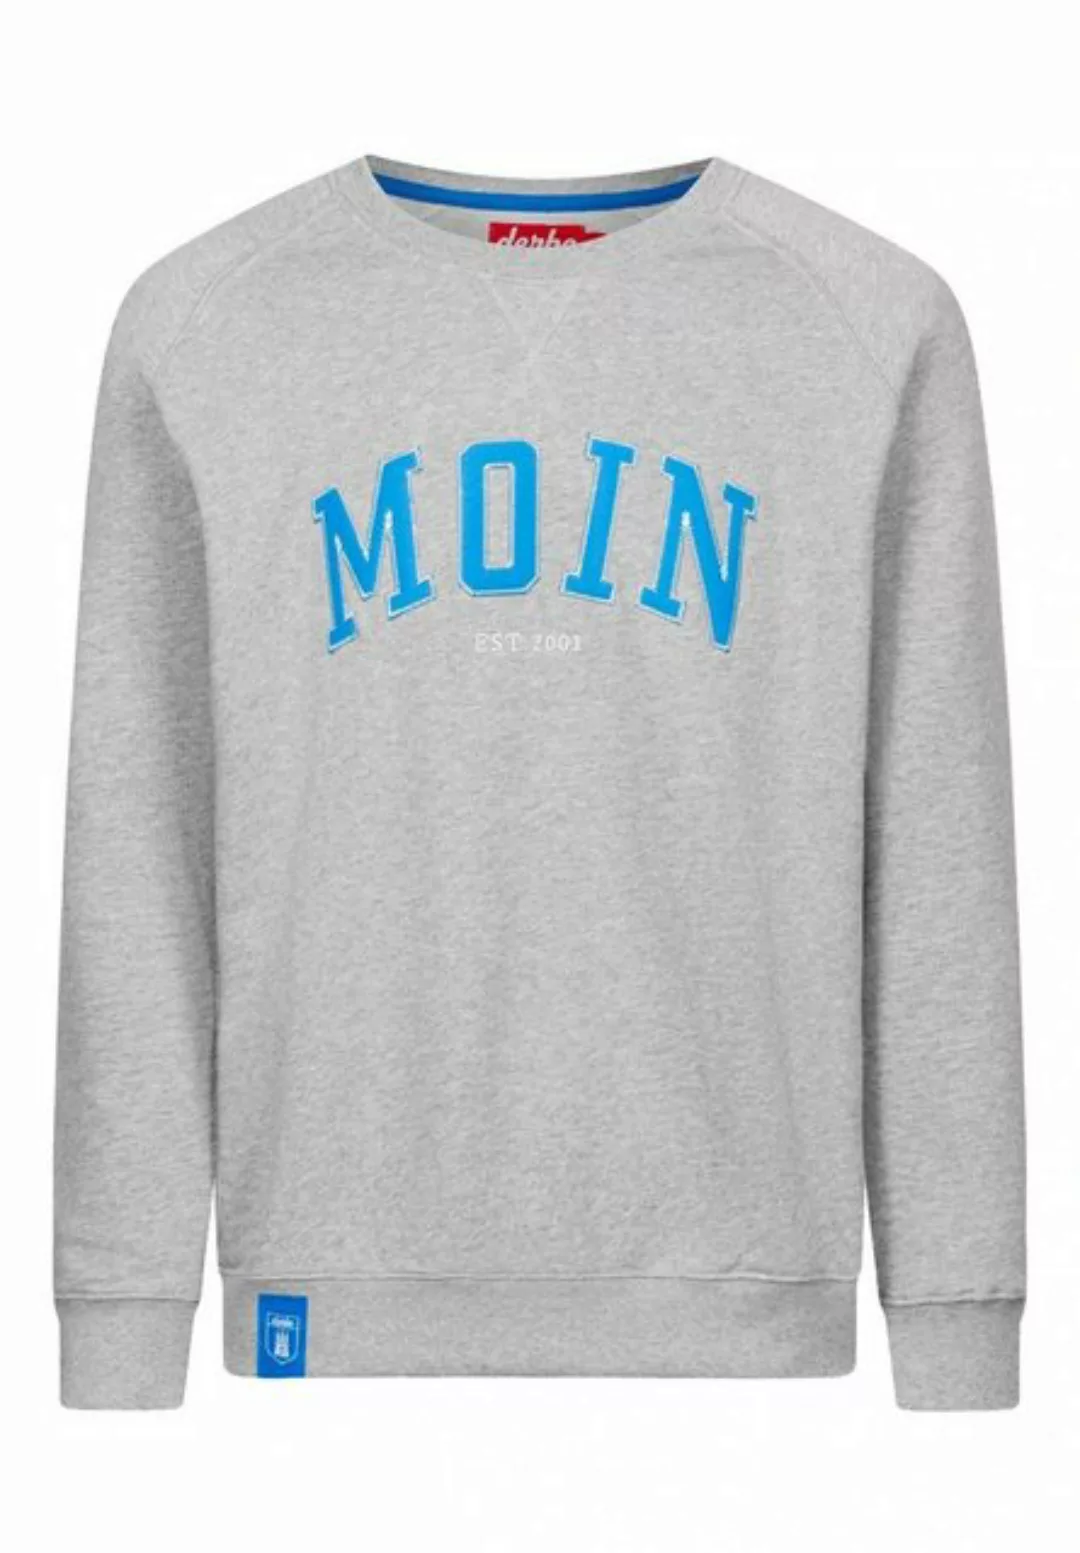 Derbe Sweatshirt Pullover Moin Men günstig online kaufen